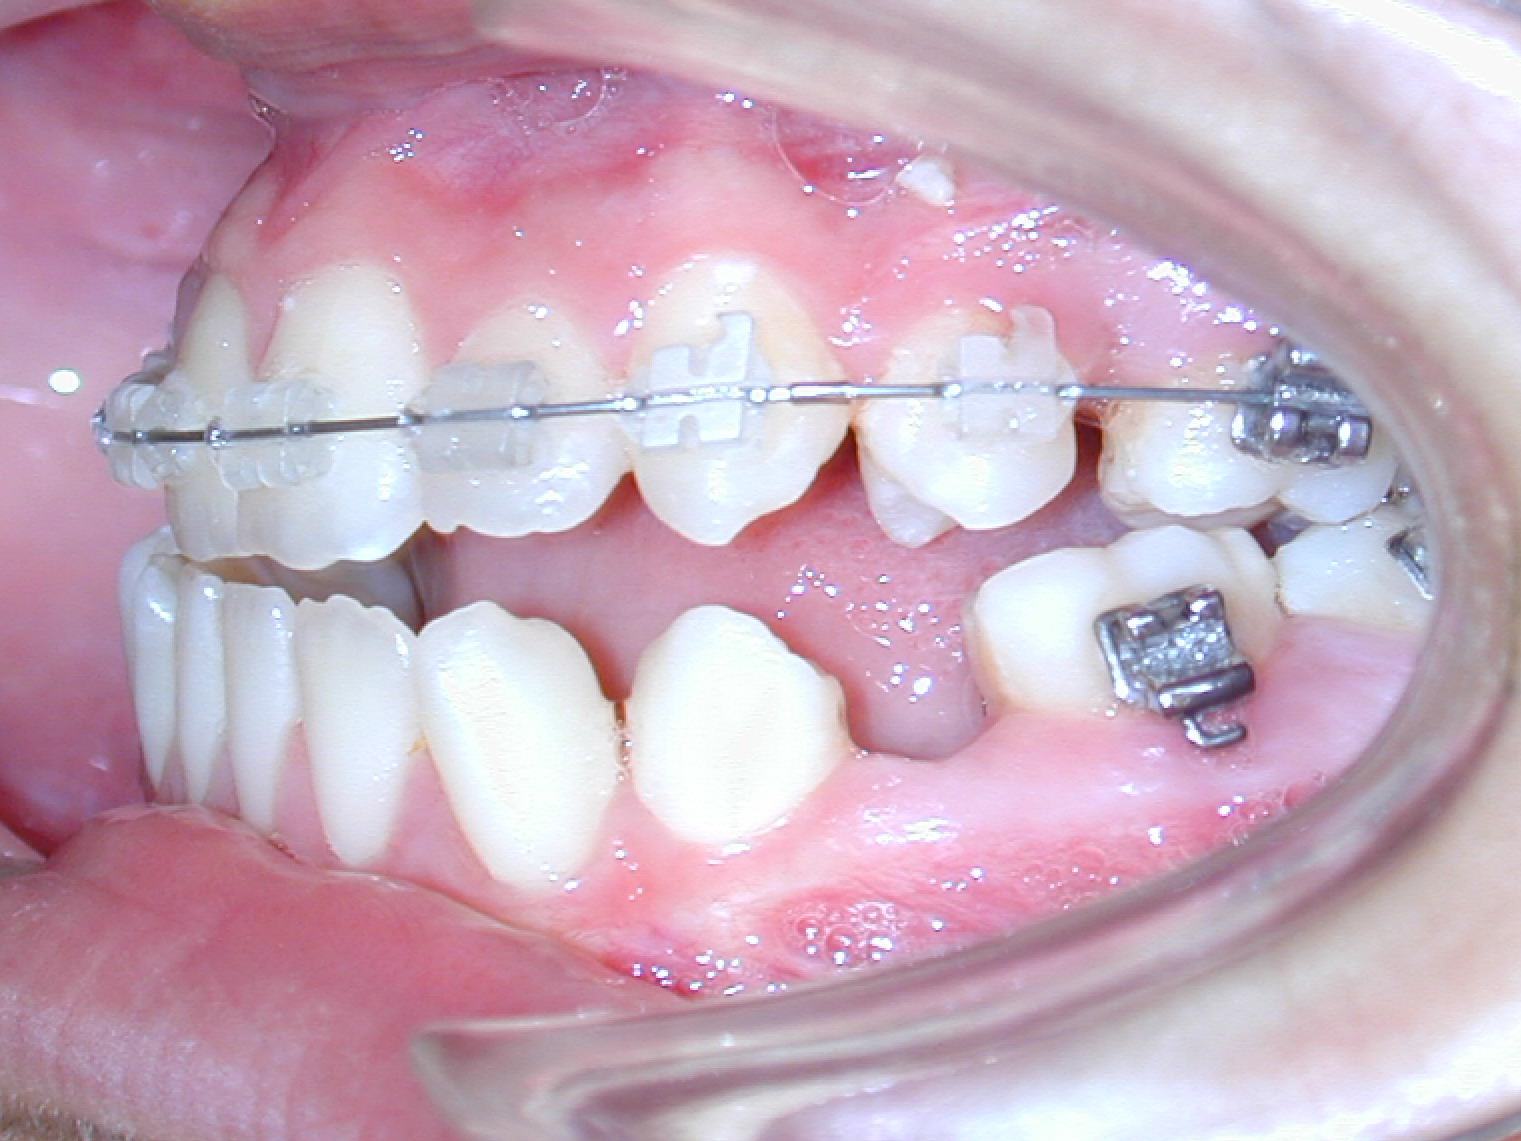 Extraction of molars and premolars by open-bite - Dr. Ignacio García Espona